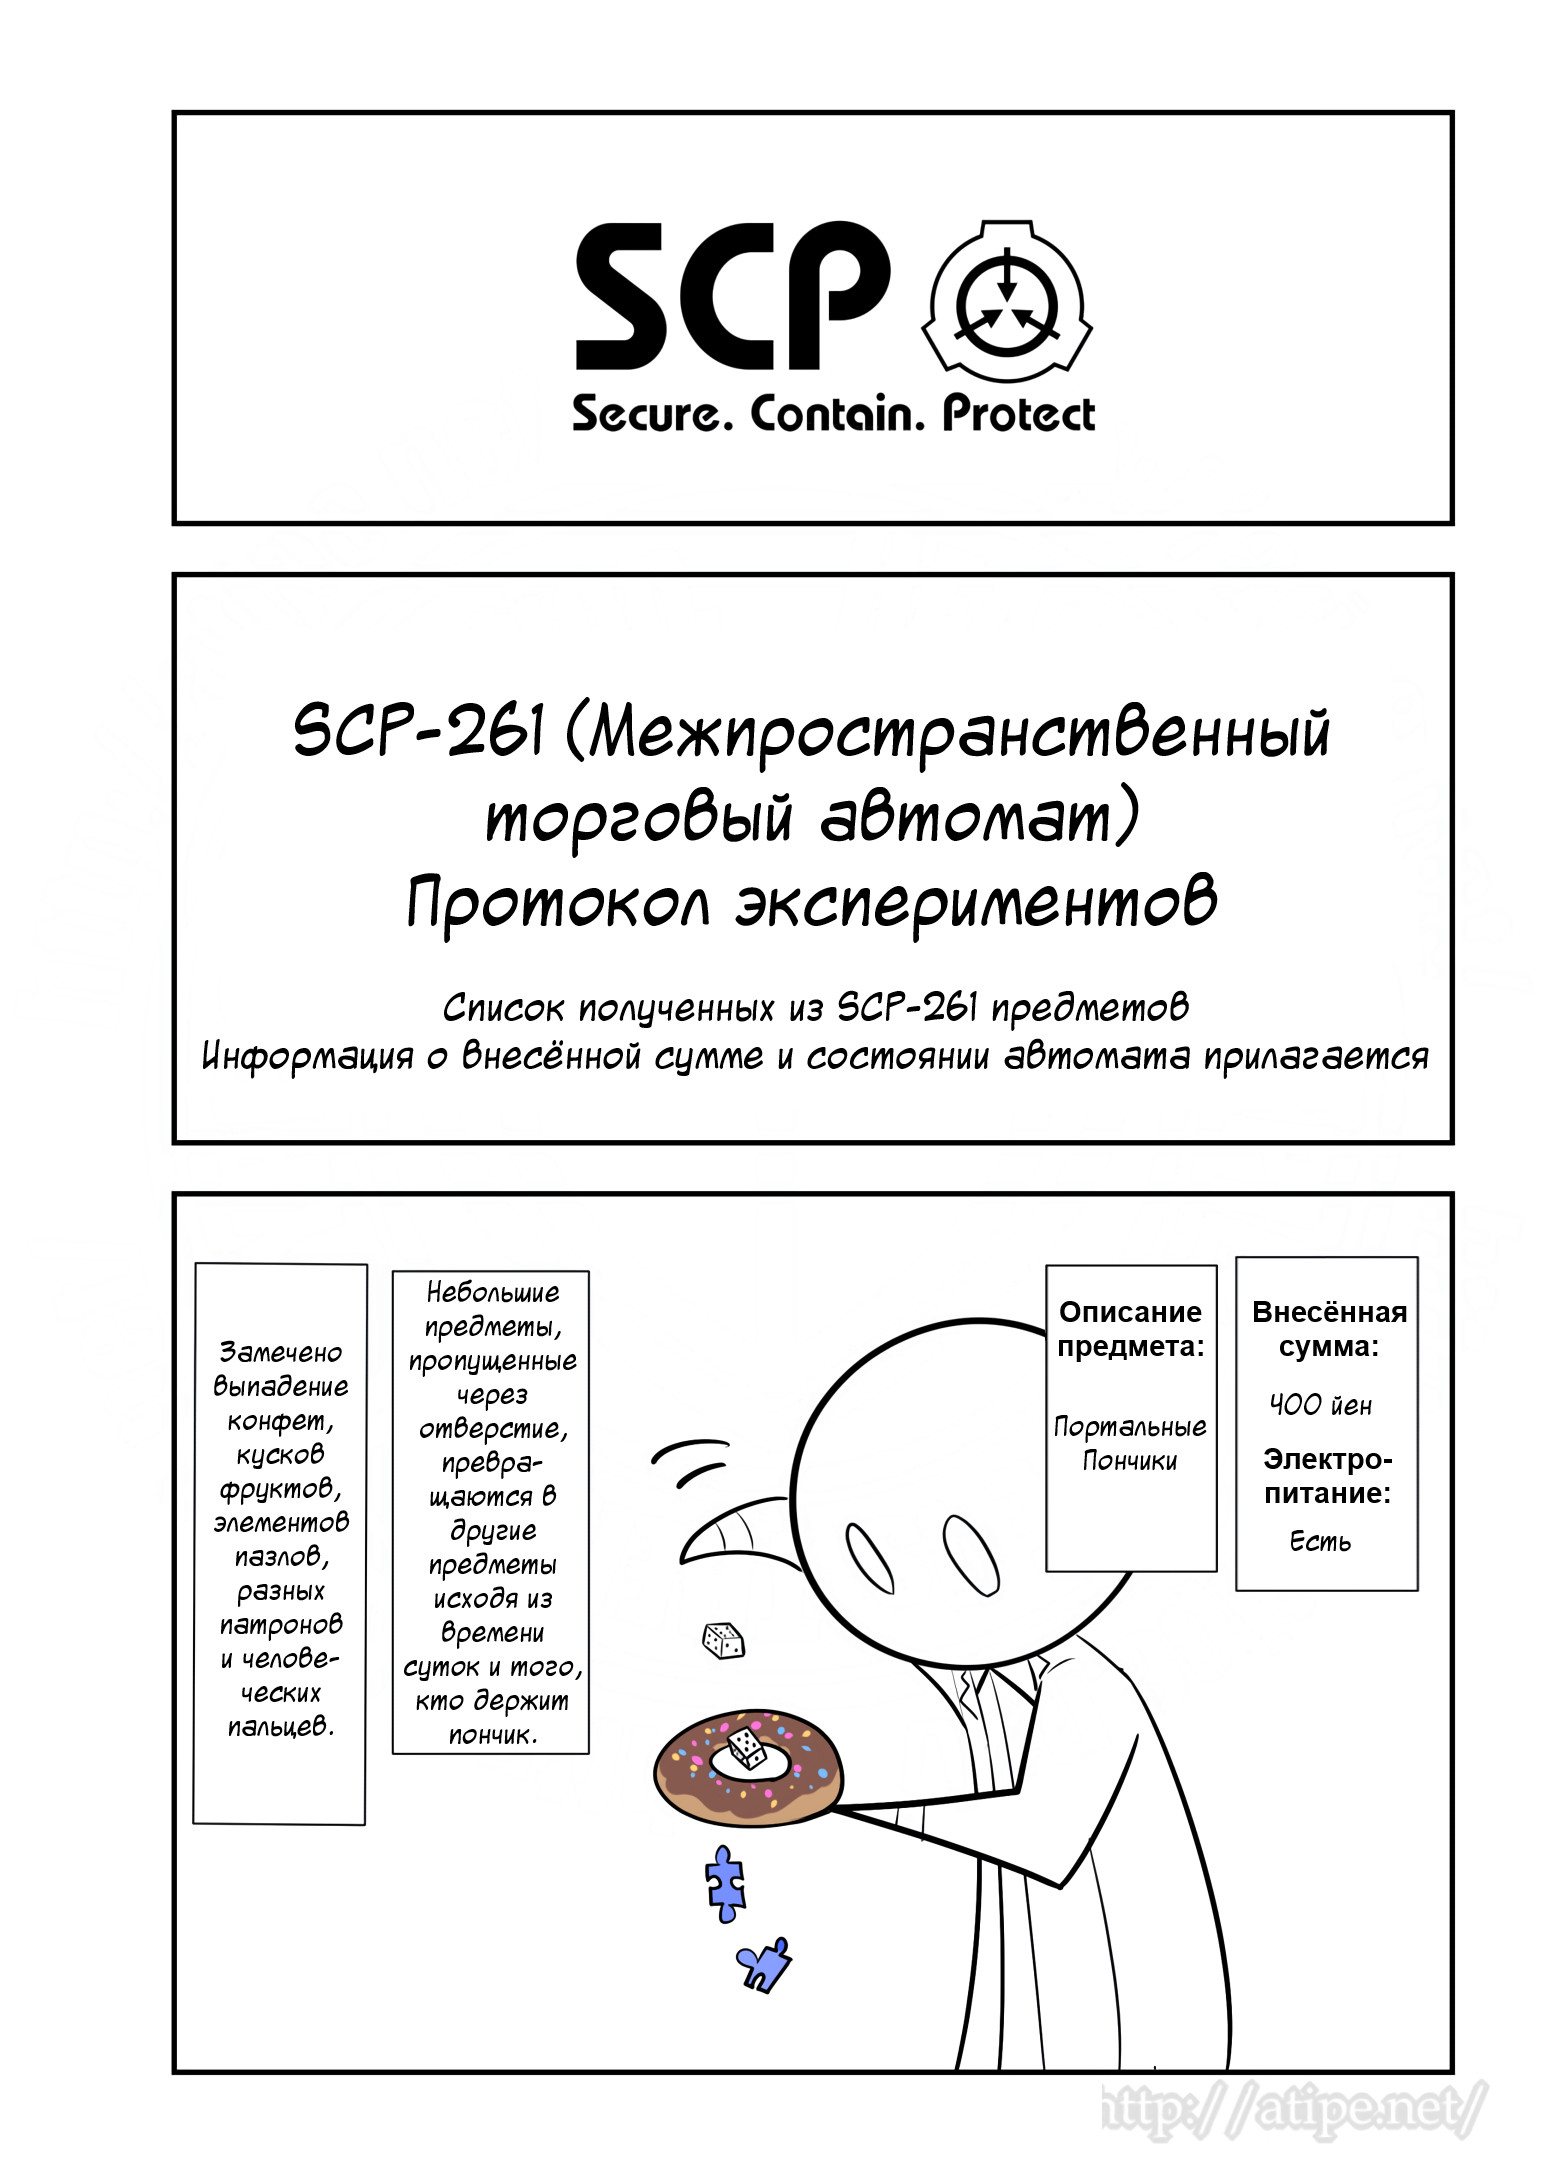 Упрощенный SCP 1 - 97 SCP-261 - Протокол экспериментов